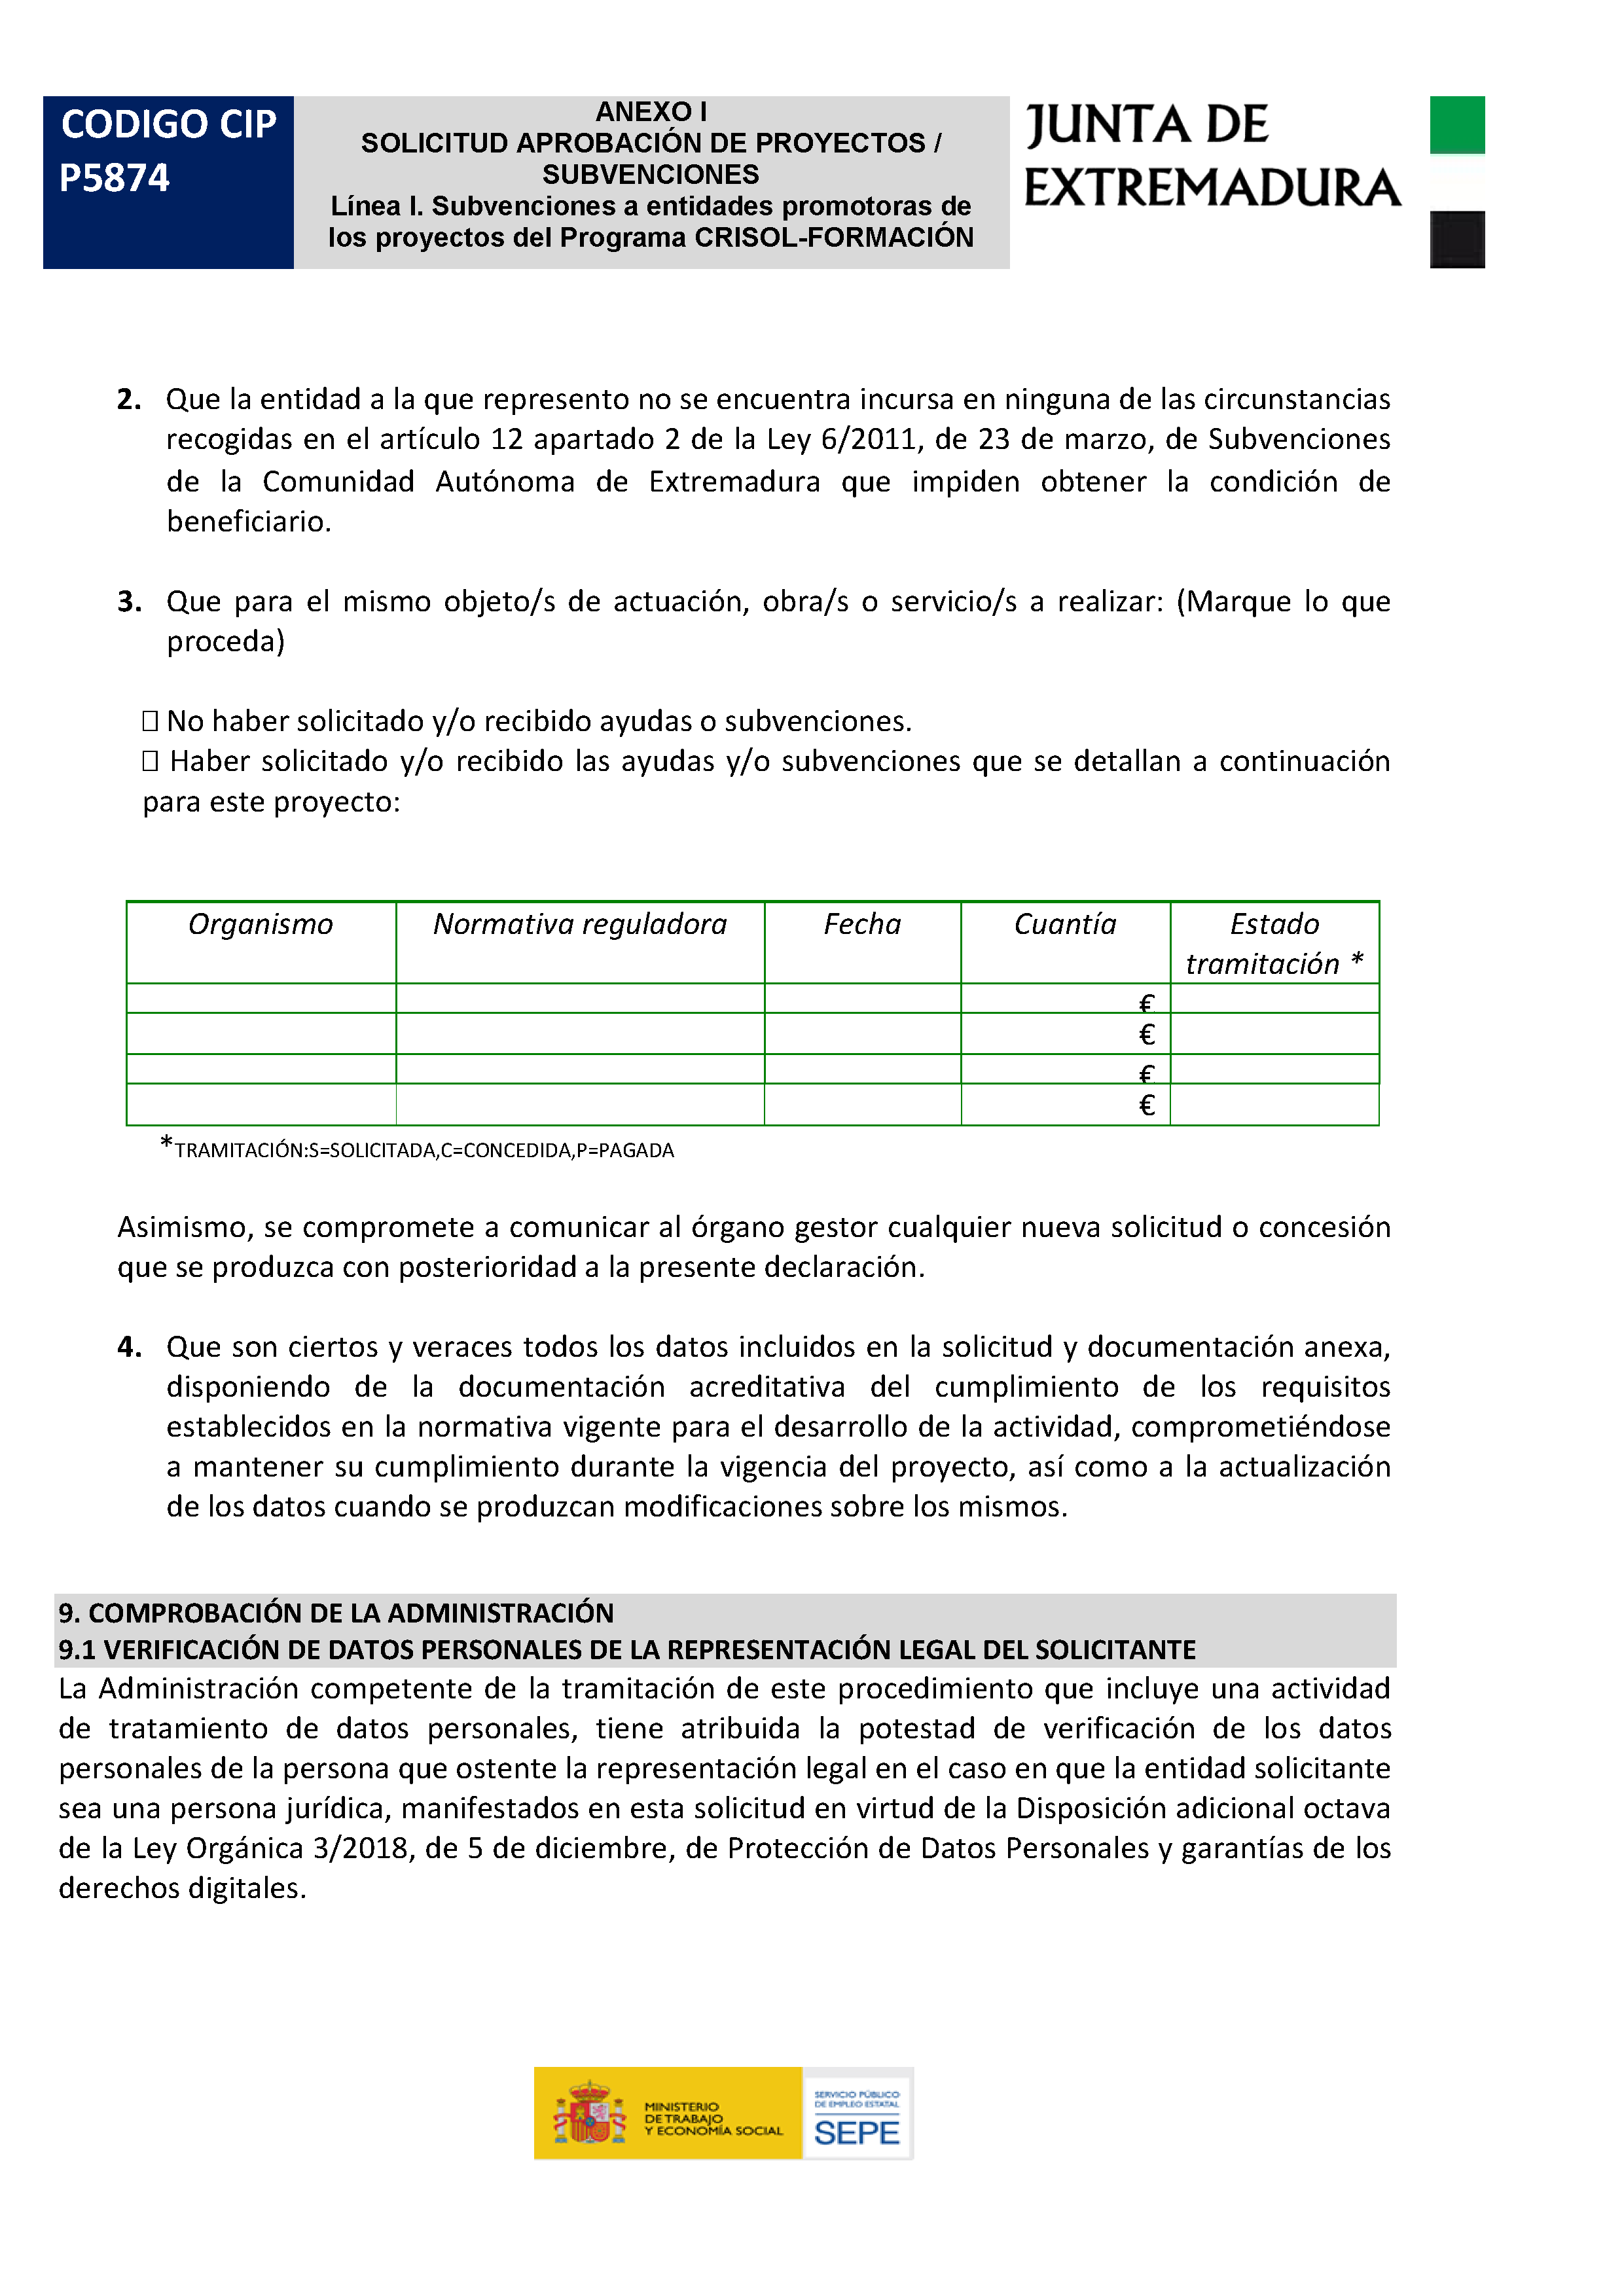 ANEXO SOLICITUD APROVACION DE PROYECTOS / SUBVENCIONES Pag 3